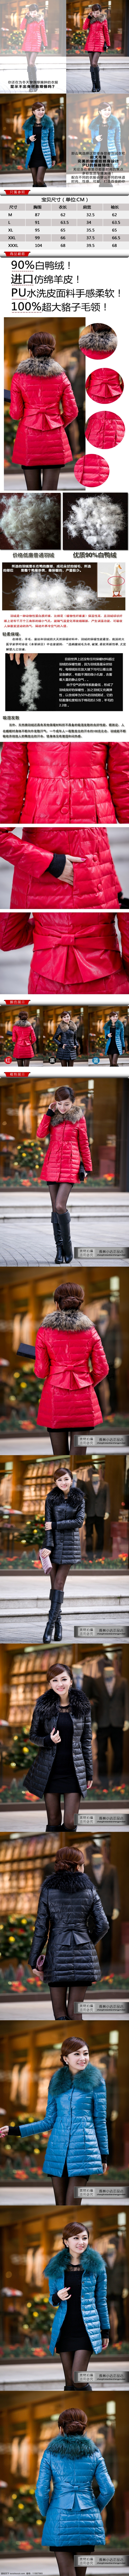 女装详情页 冬季 女装 外套 描述 页 女装通用模板 黑色